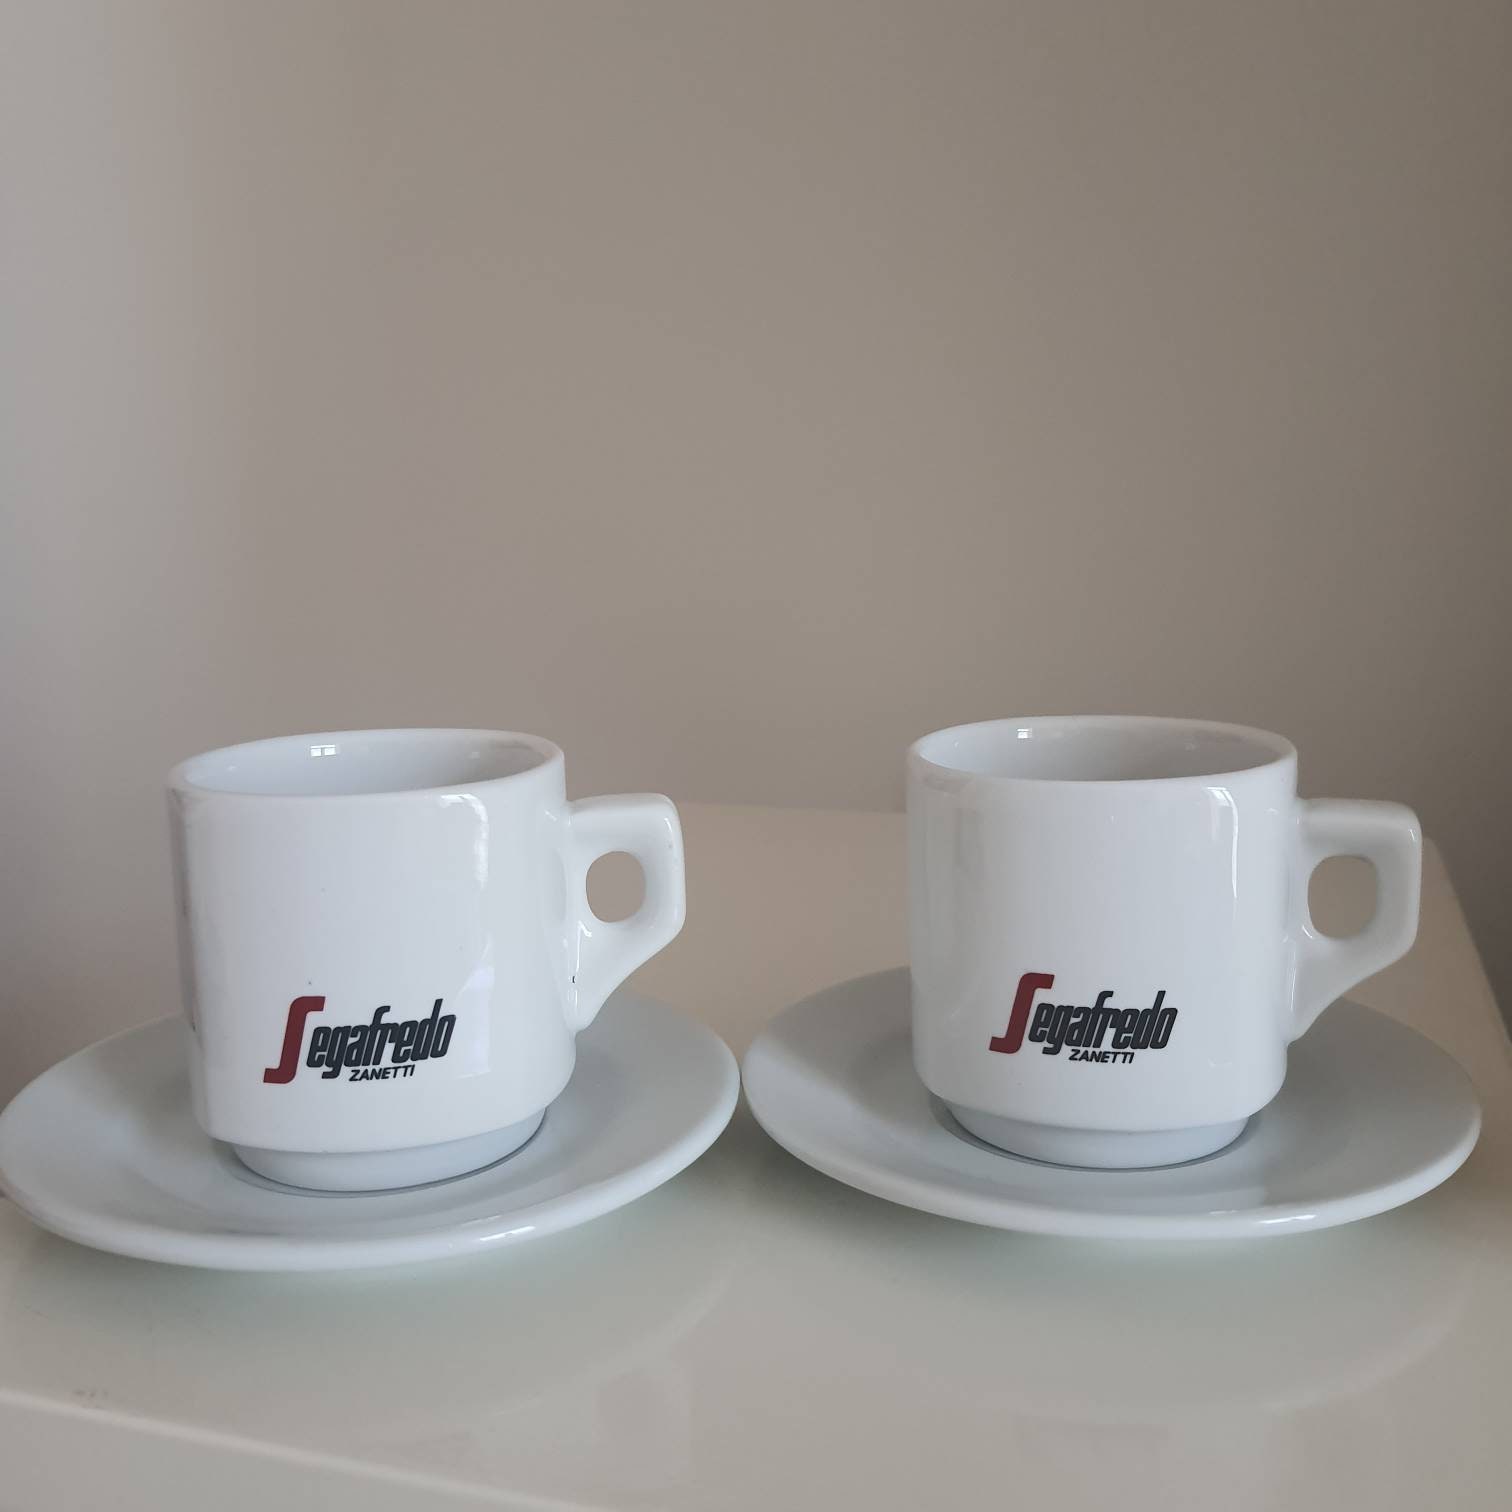 Tasse de cappuccino  Segafredo Zanetti Coffee System